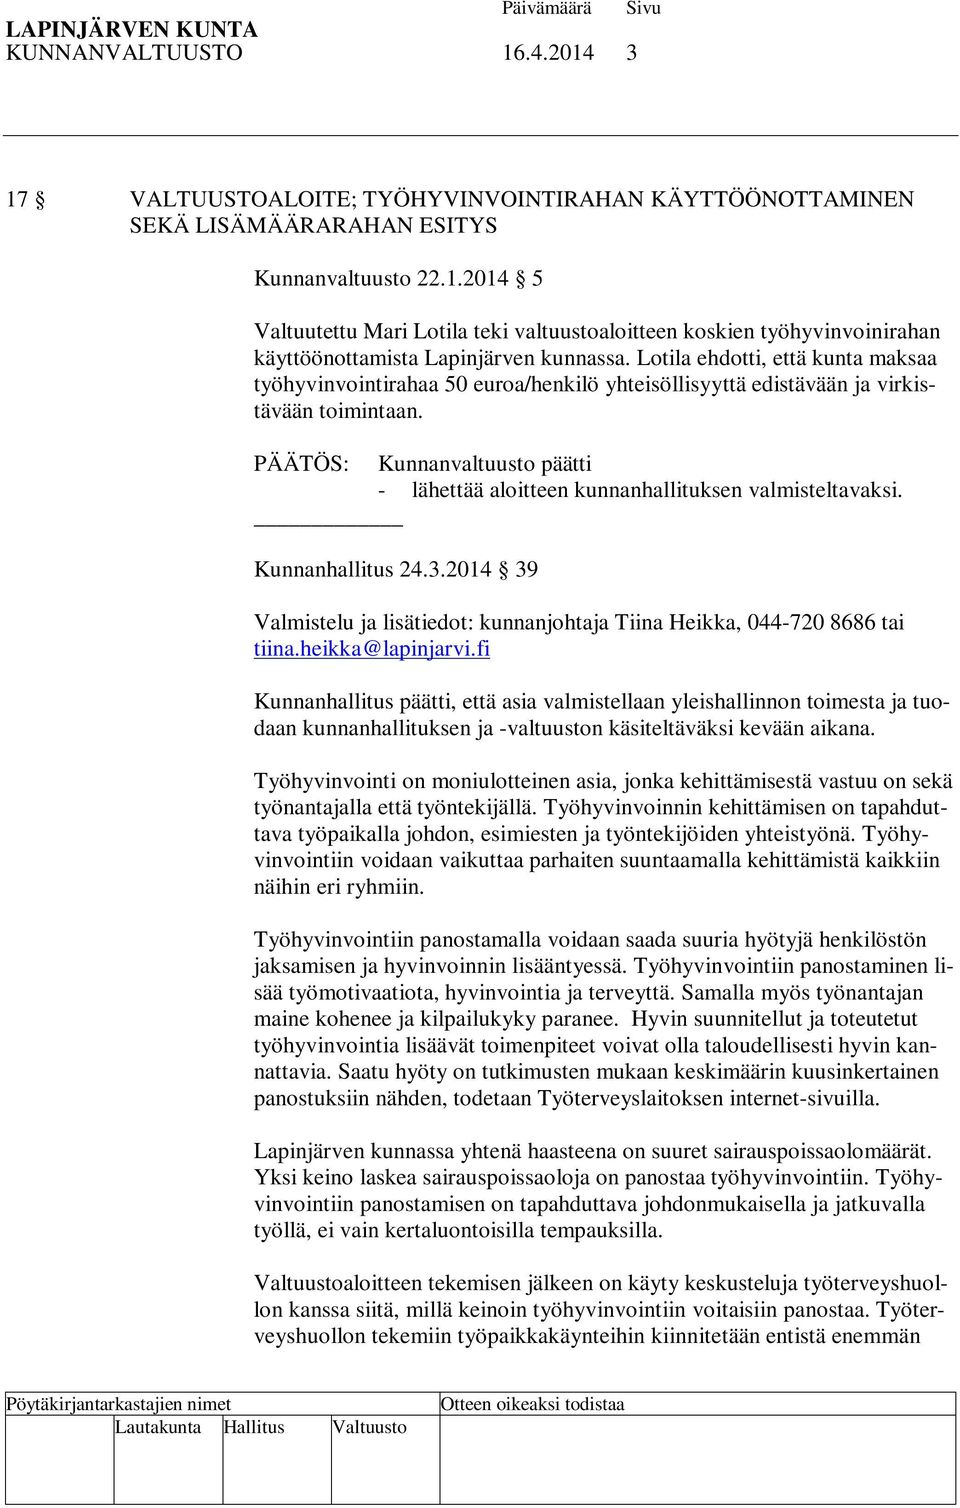 PÄÄTÖS: Kunnanvaltuusto päätti - lähettää aloitteen kunnanhallituksen valmisteltavaksi. Kunnanhallitus 24.3.2014 39 Valmistelu ja lisätiedot: kunnanjohtaja Tiina Heikka, 044-720 8686 tai tiina.